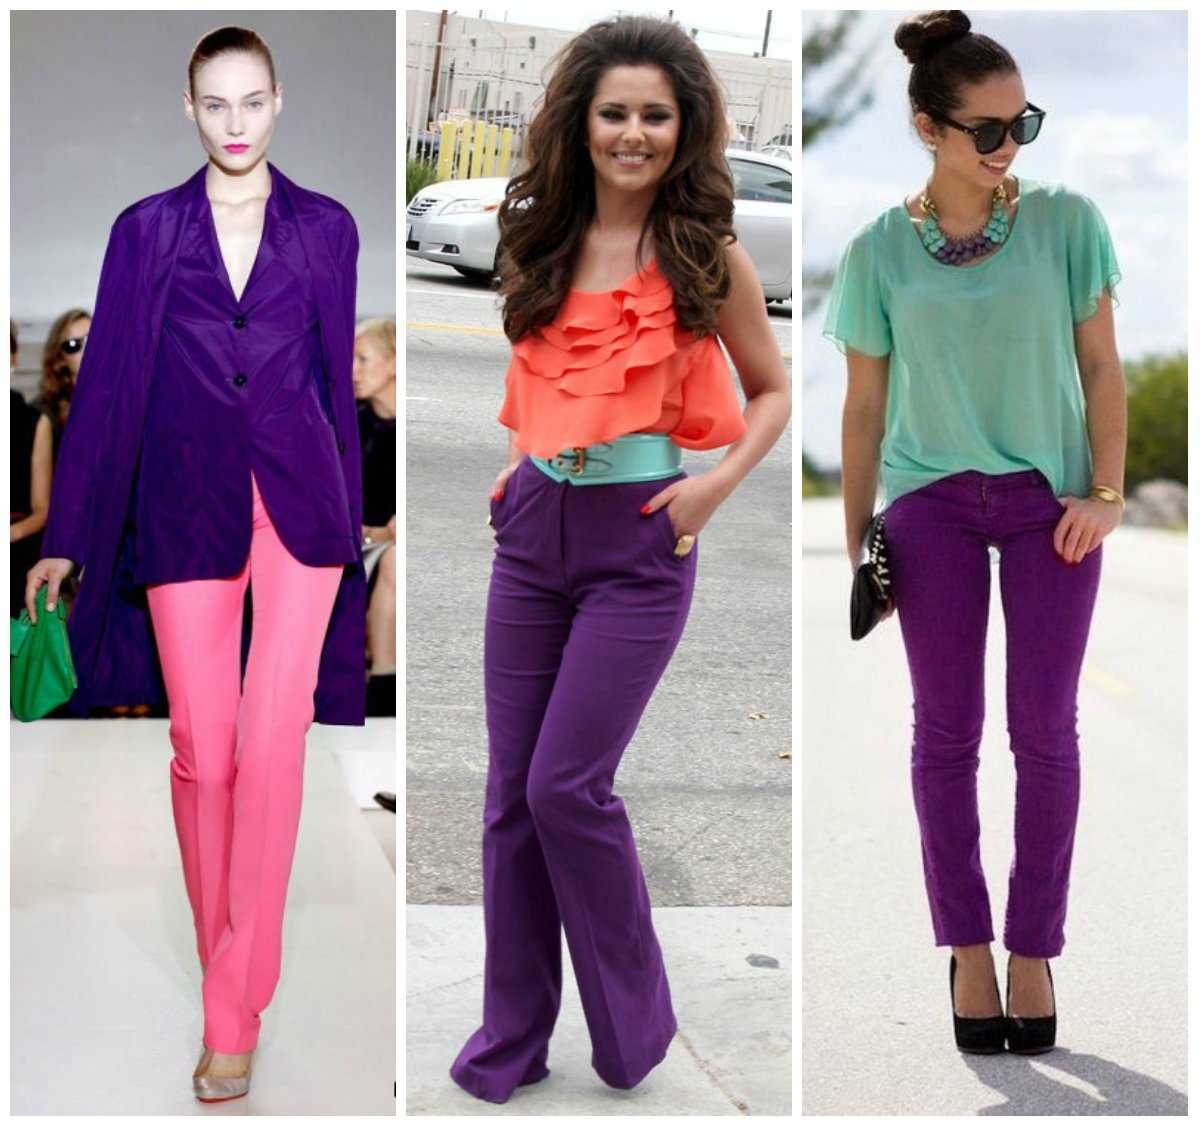 С какими цветами сочетается фиолетовый в одежде: 19 эффектных комбинаций по цветовому кругу | lifepodium